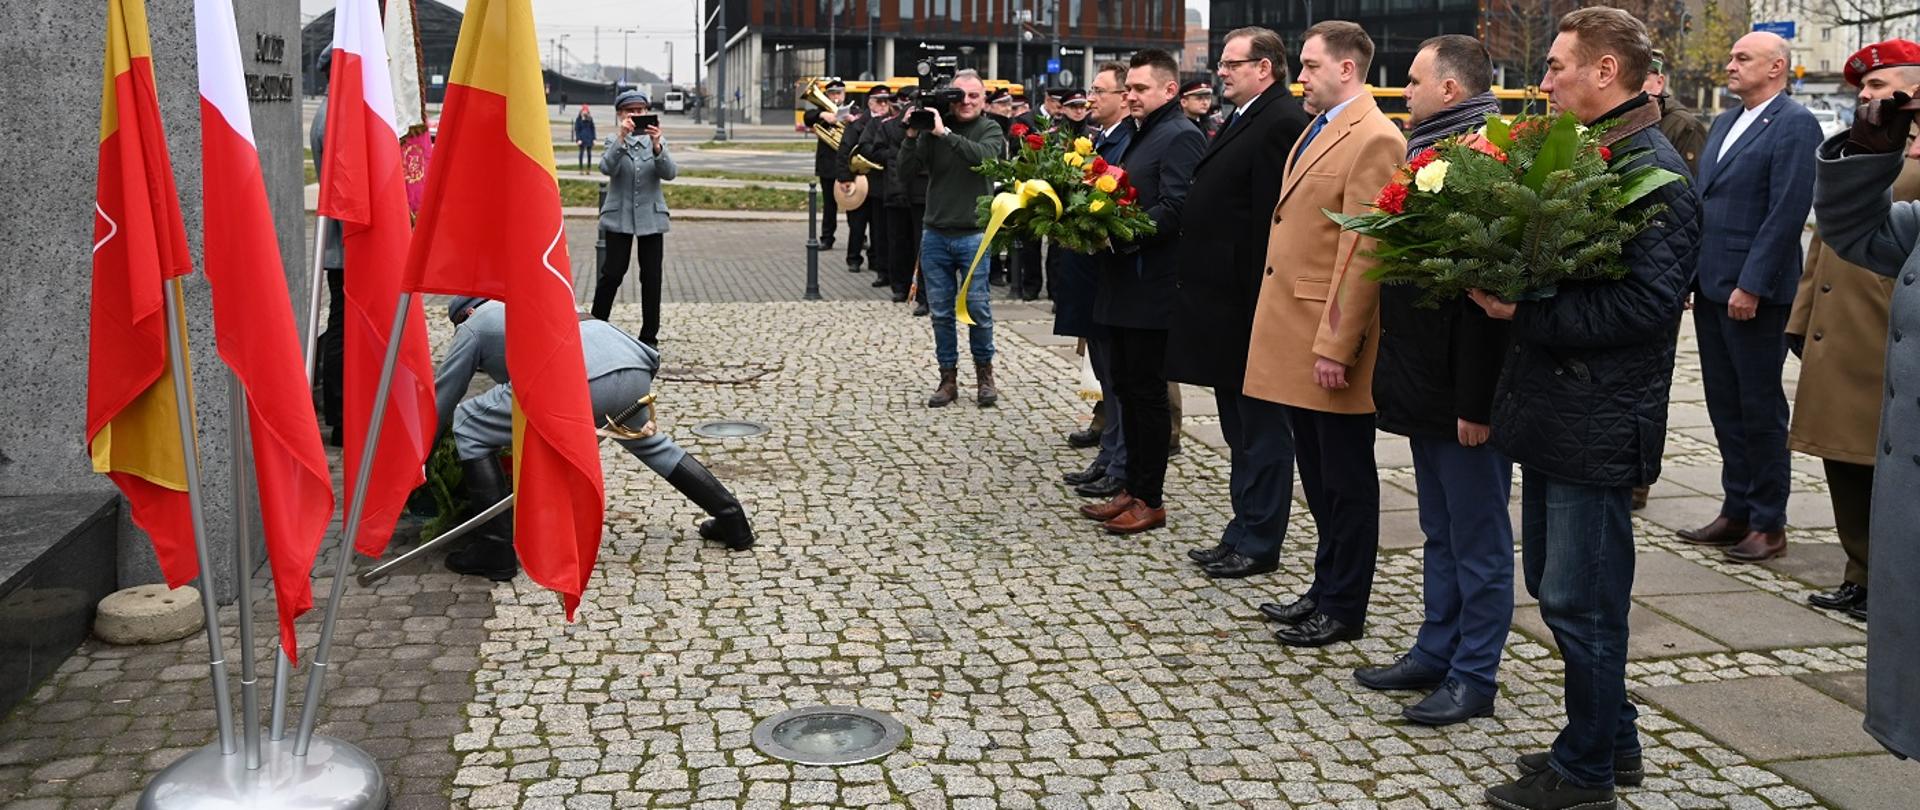 Uroczystość z okazji jubileuszu 40-lecia powstania Społecznego Komitetu Pamięci Józefa Piłsudskiego w Łodzi